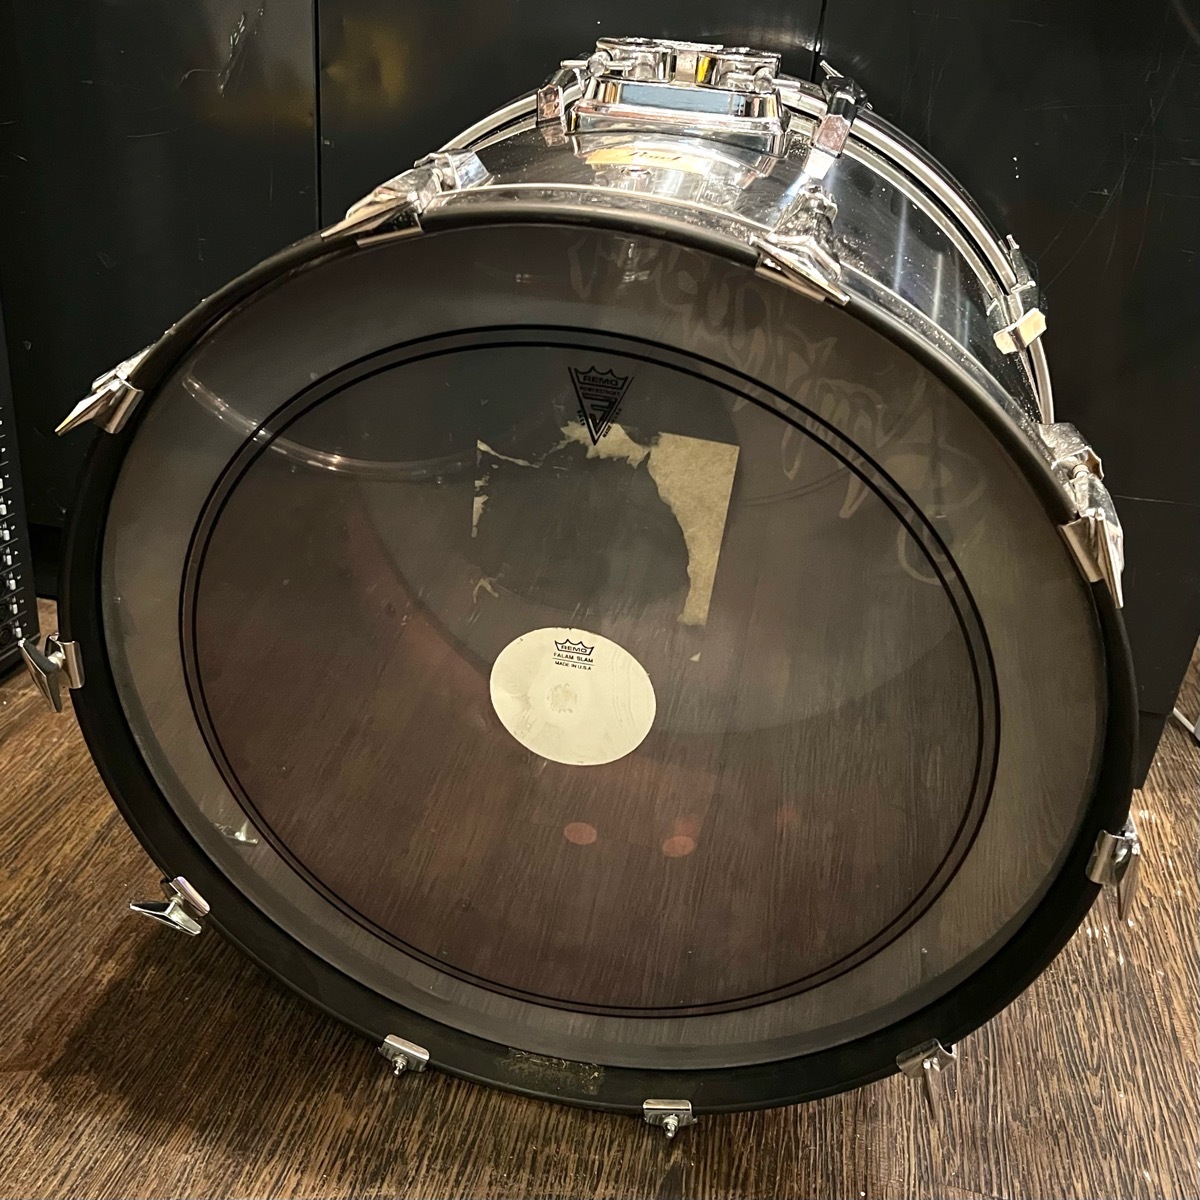 Pearl жемчуг большой барабан редкий волокно ракушка 24×16 дюймовый зеркальный серебряный -GrunSound-h441-